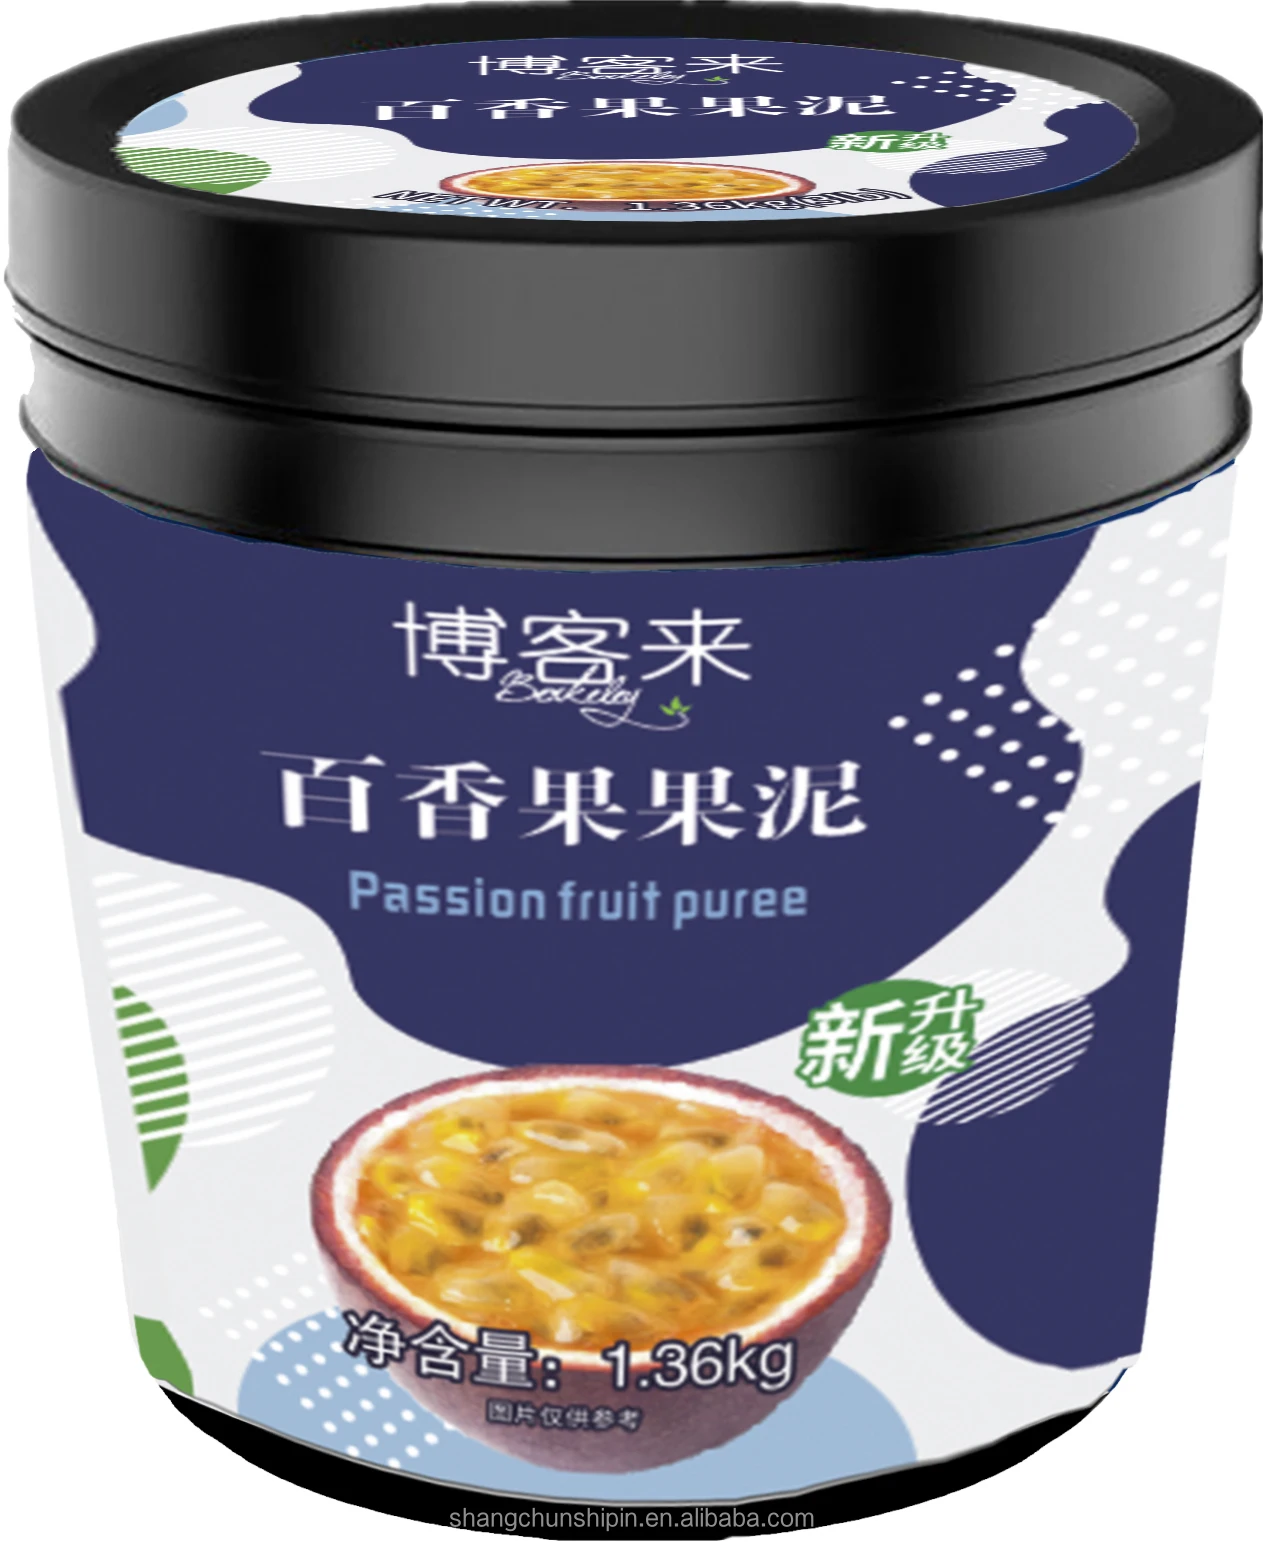 1 36 кг поставка от китайского производителя клубничный пюре концентрат фруктовый джем